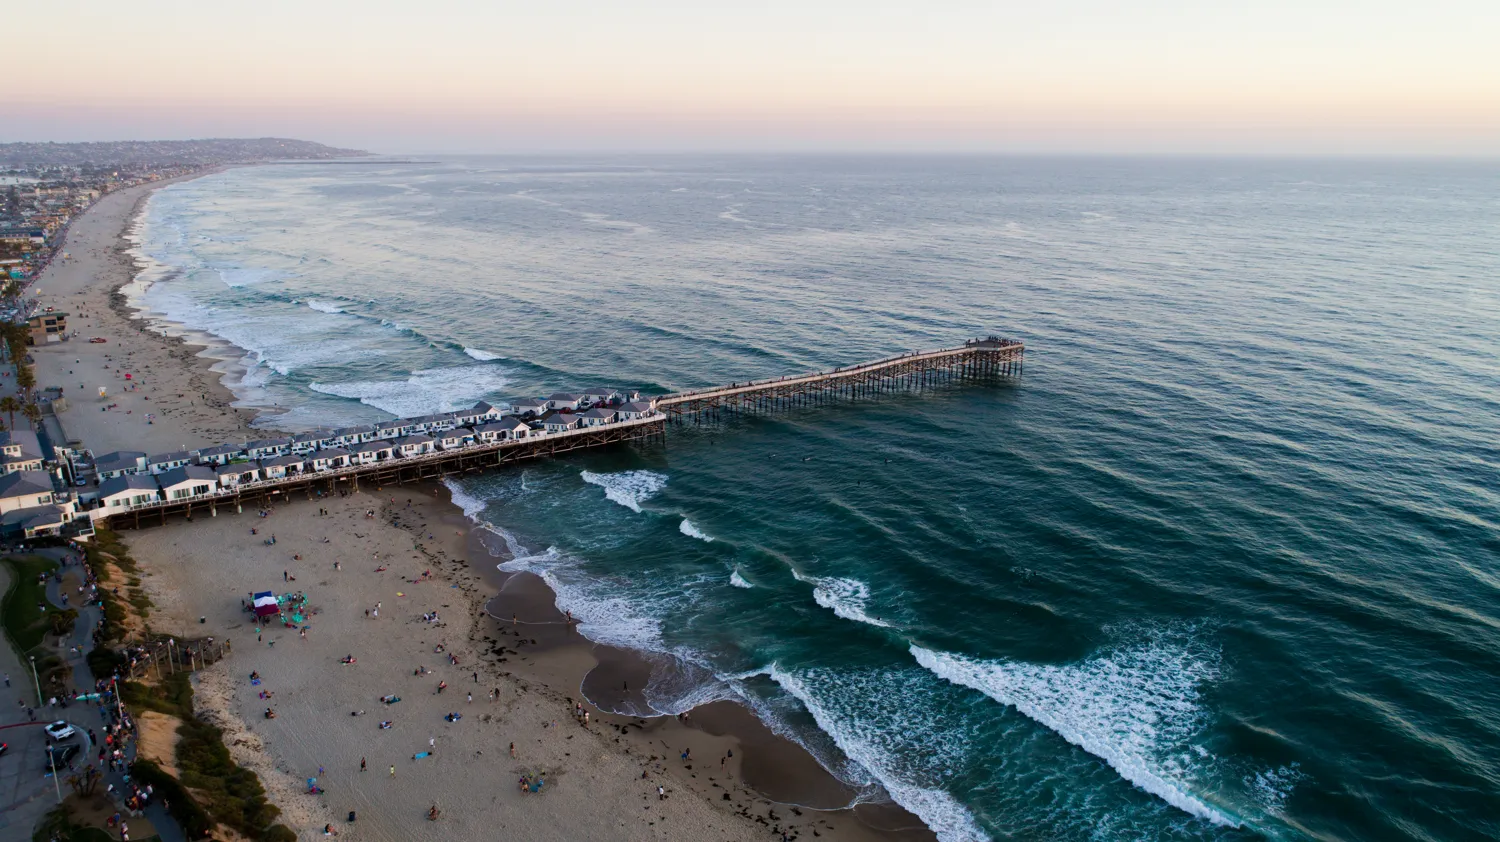 Pacific Beach, San Diego, CA